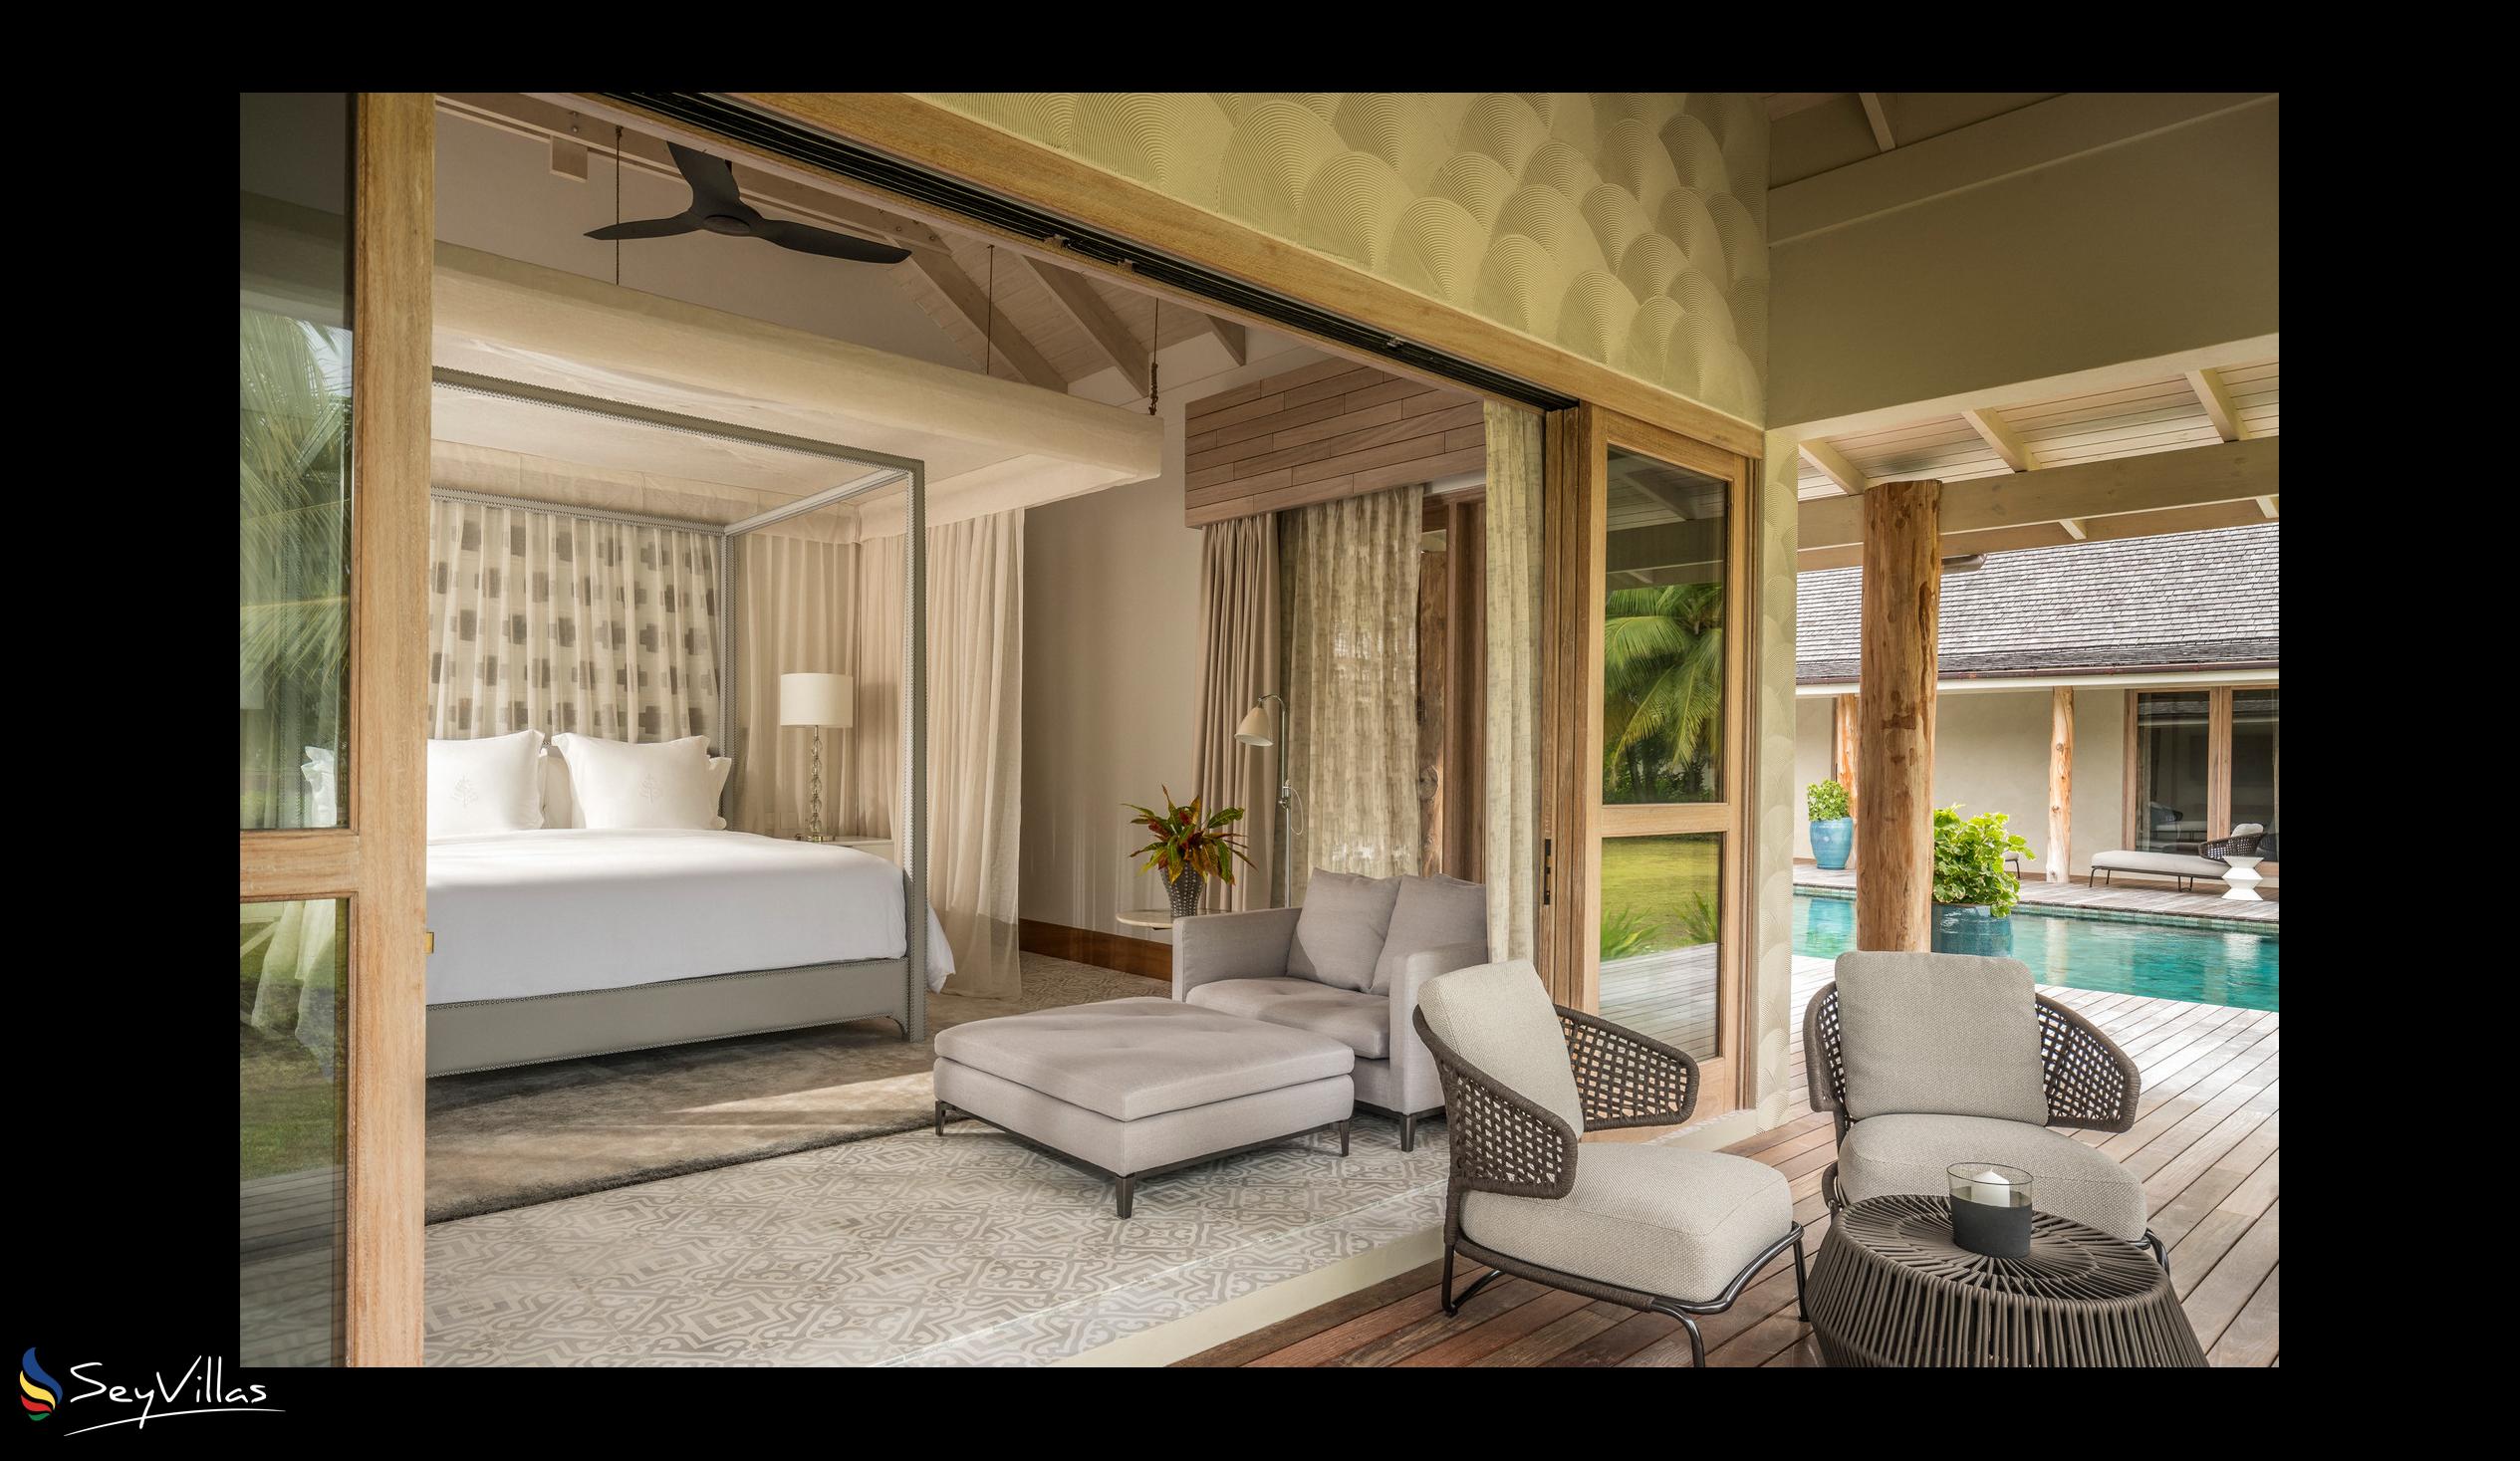 Foto 193: Four Seasons Resort Desroches Island - 5-Schlafzimmer Präsidenten-Villa - Desroches Island (Seychellen)